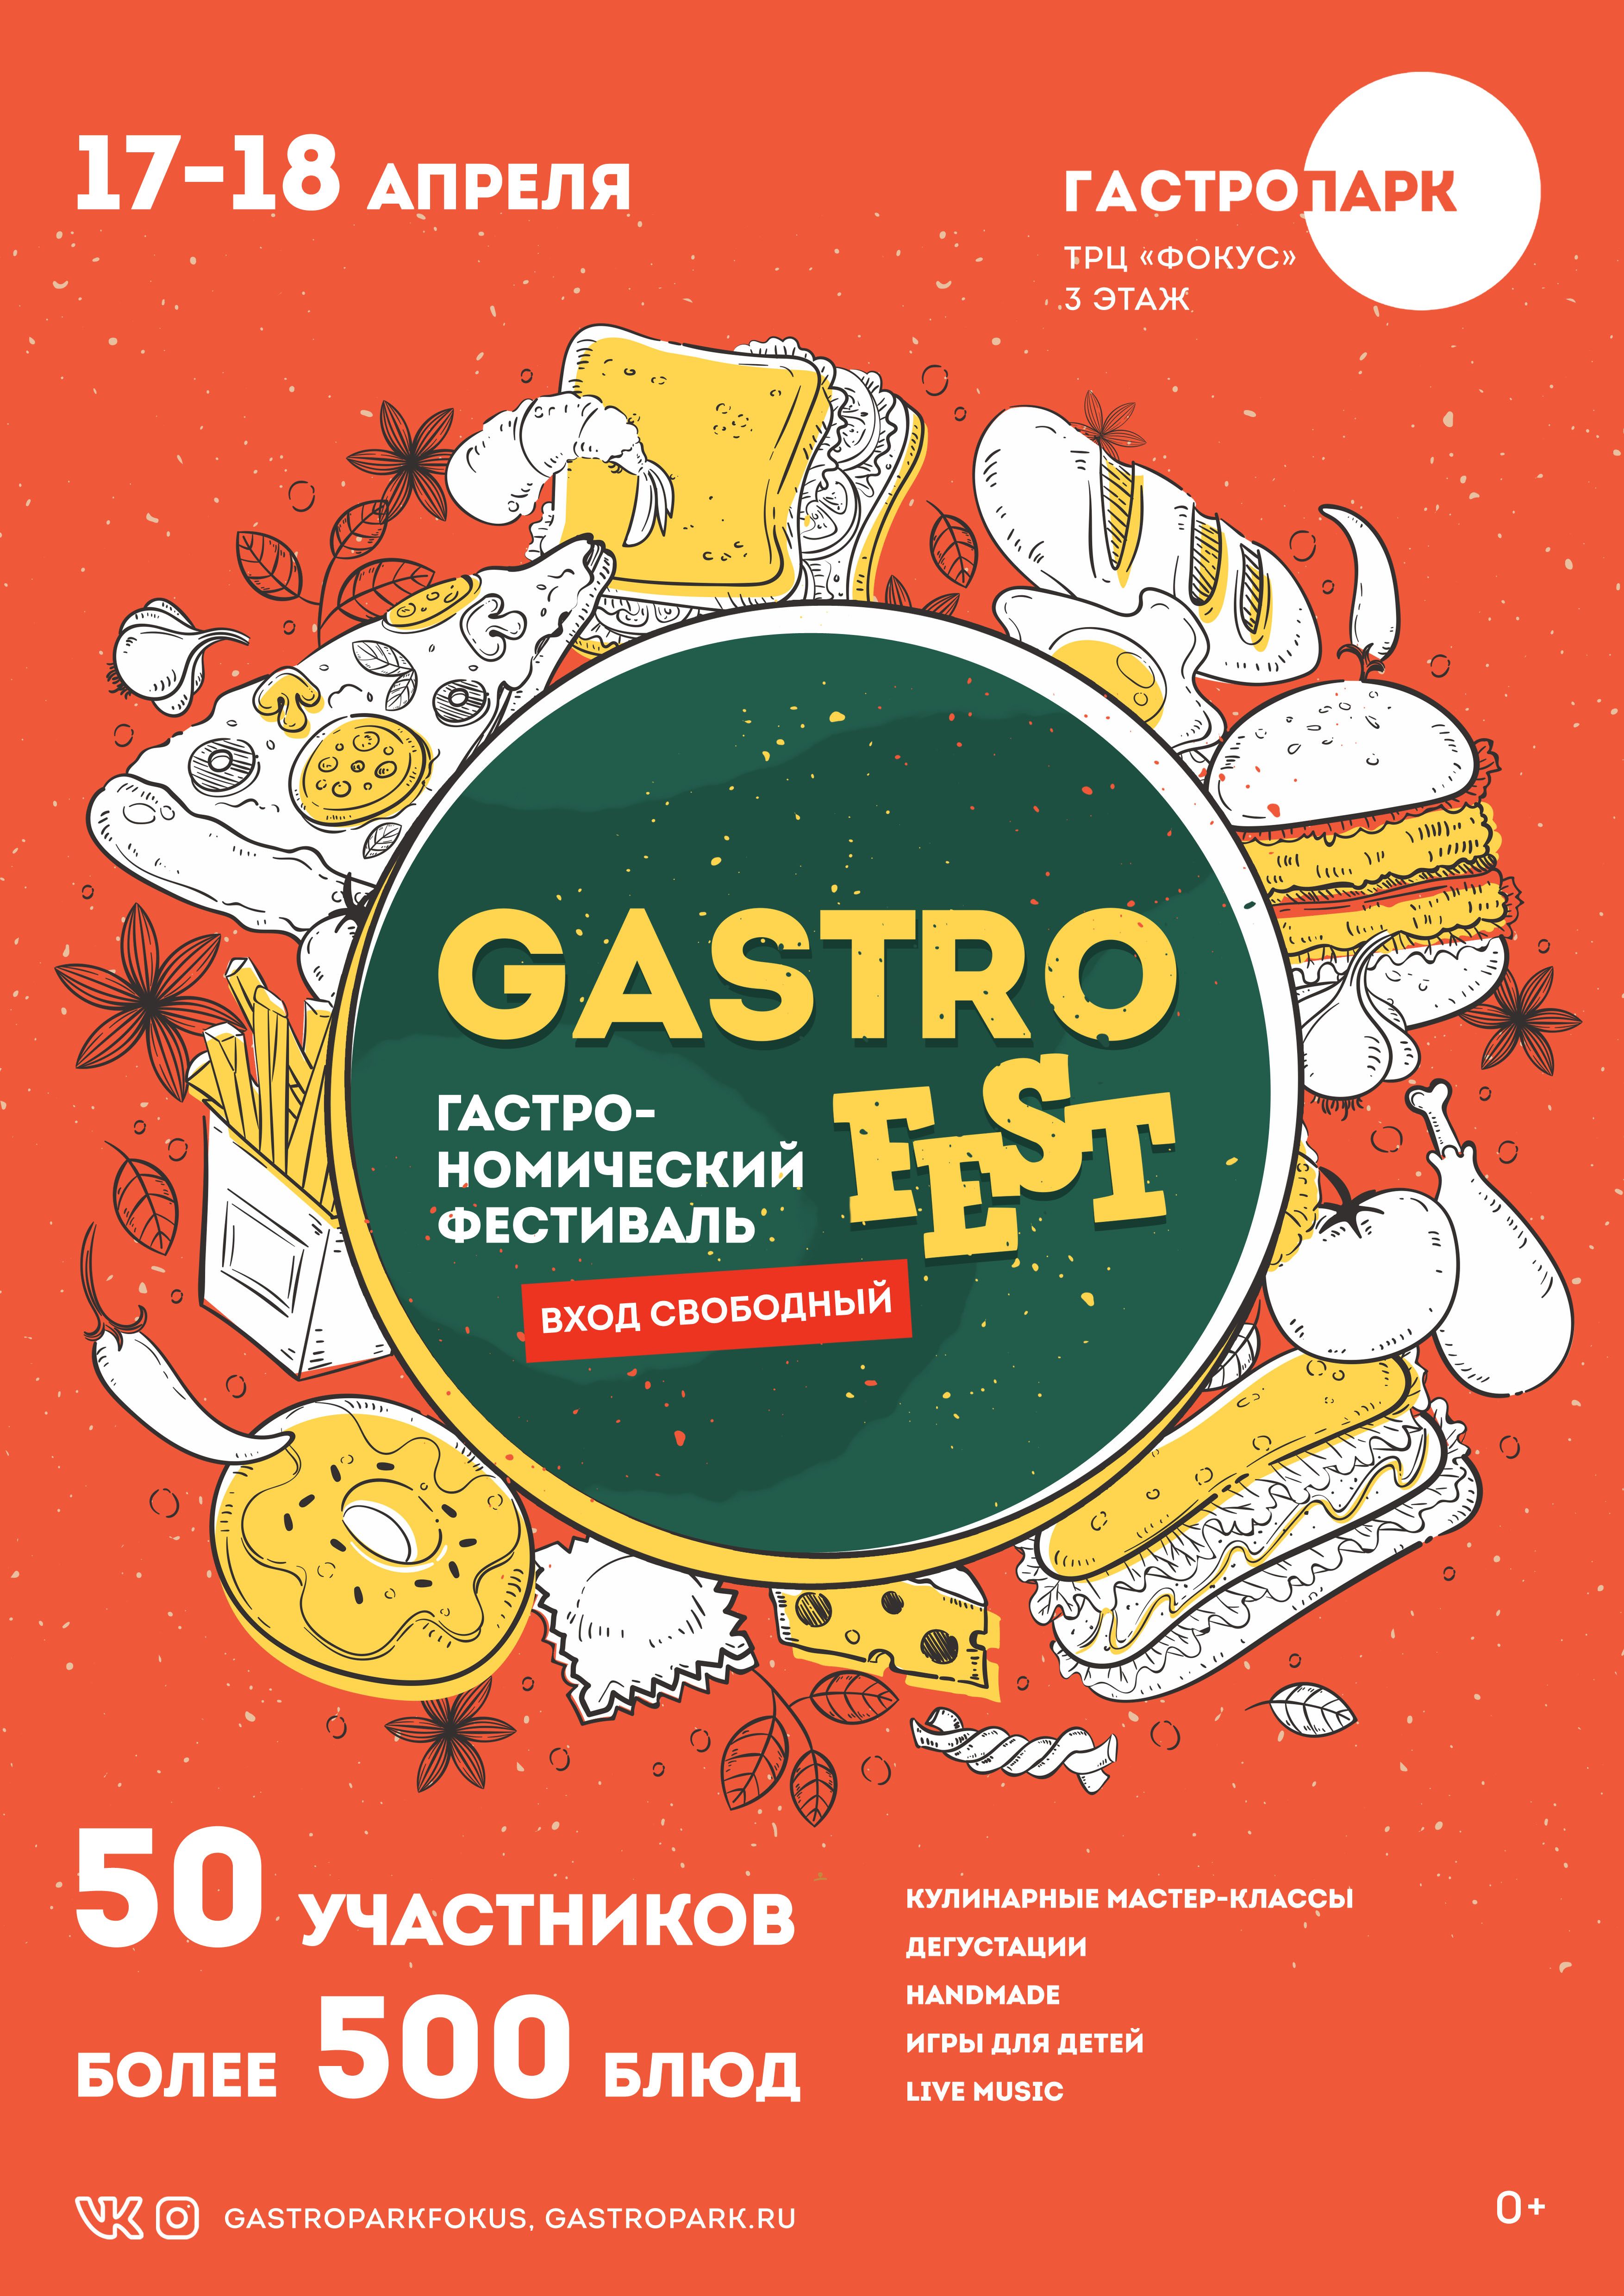 В Челябинске пройдёт гастрономический фестиваль - Gastrofest